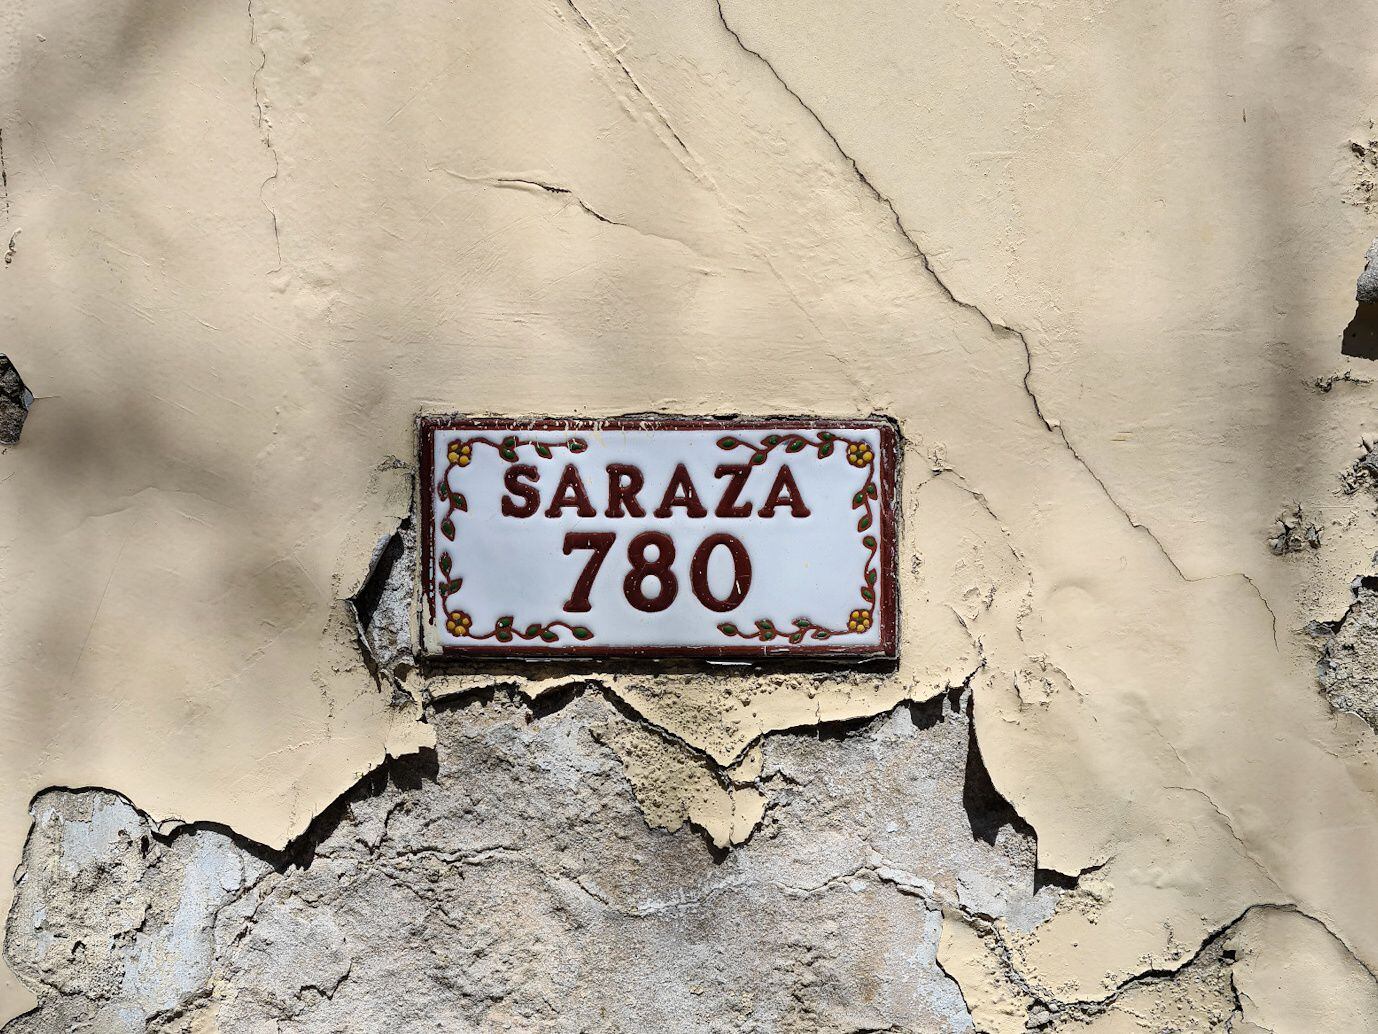 La calle que atraviesa barrios del oeste recibió el nombre en 1904. El primer Saraza que arribó al Río de la Plata lo hizo en 1757.